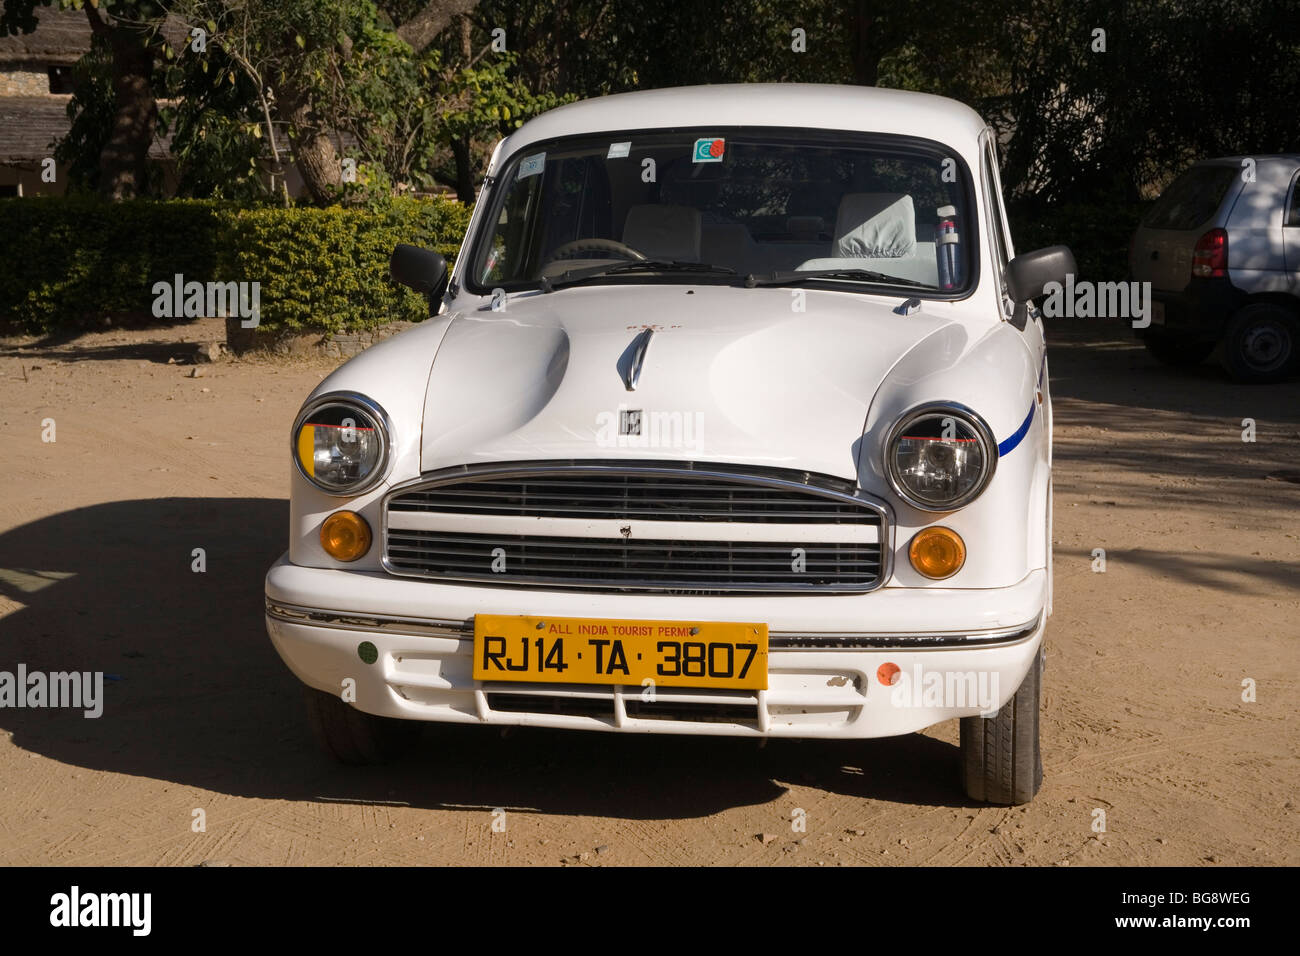 India ambassador car Stock Photo